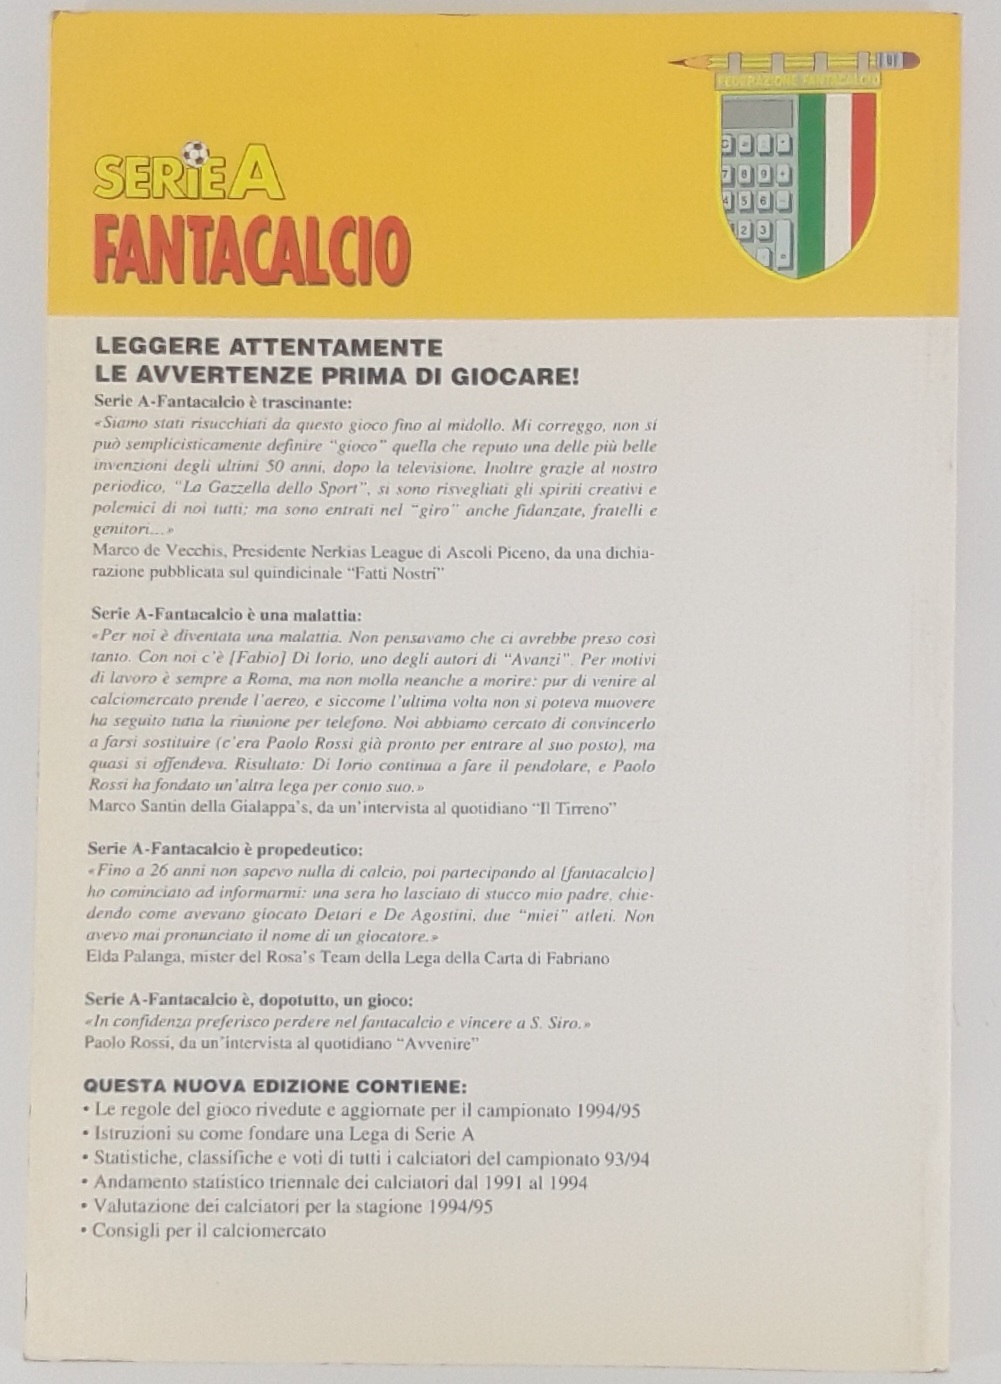 Serie A fantacalcio 94/95